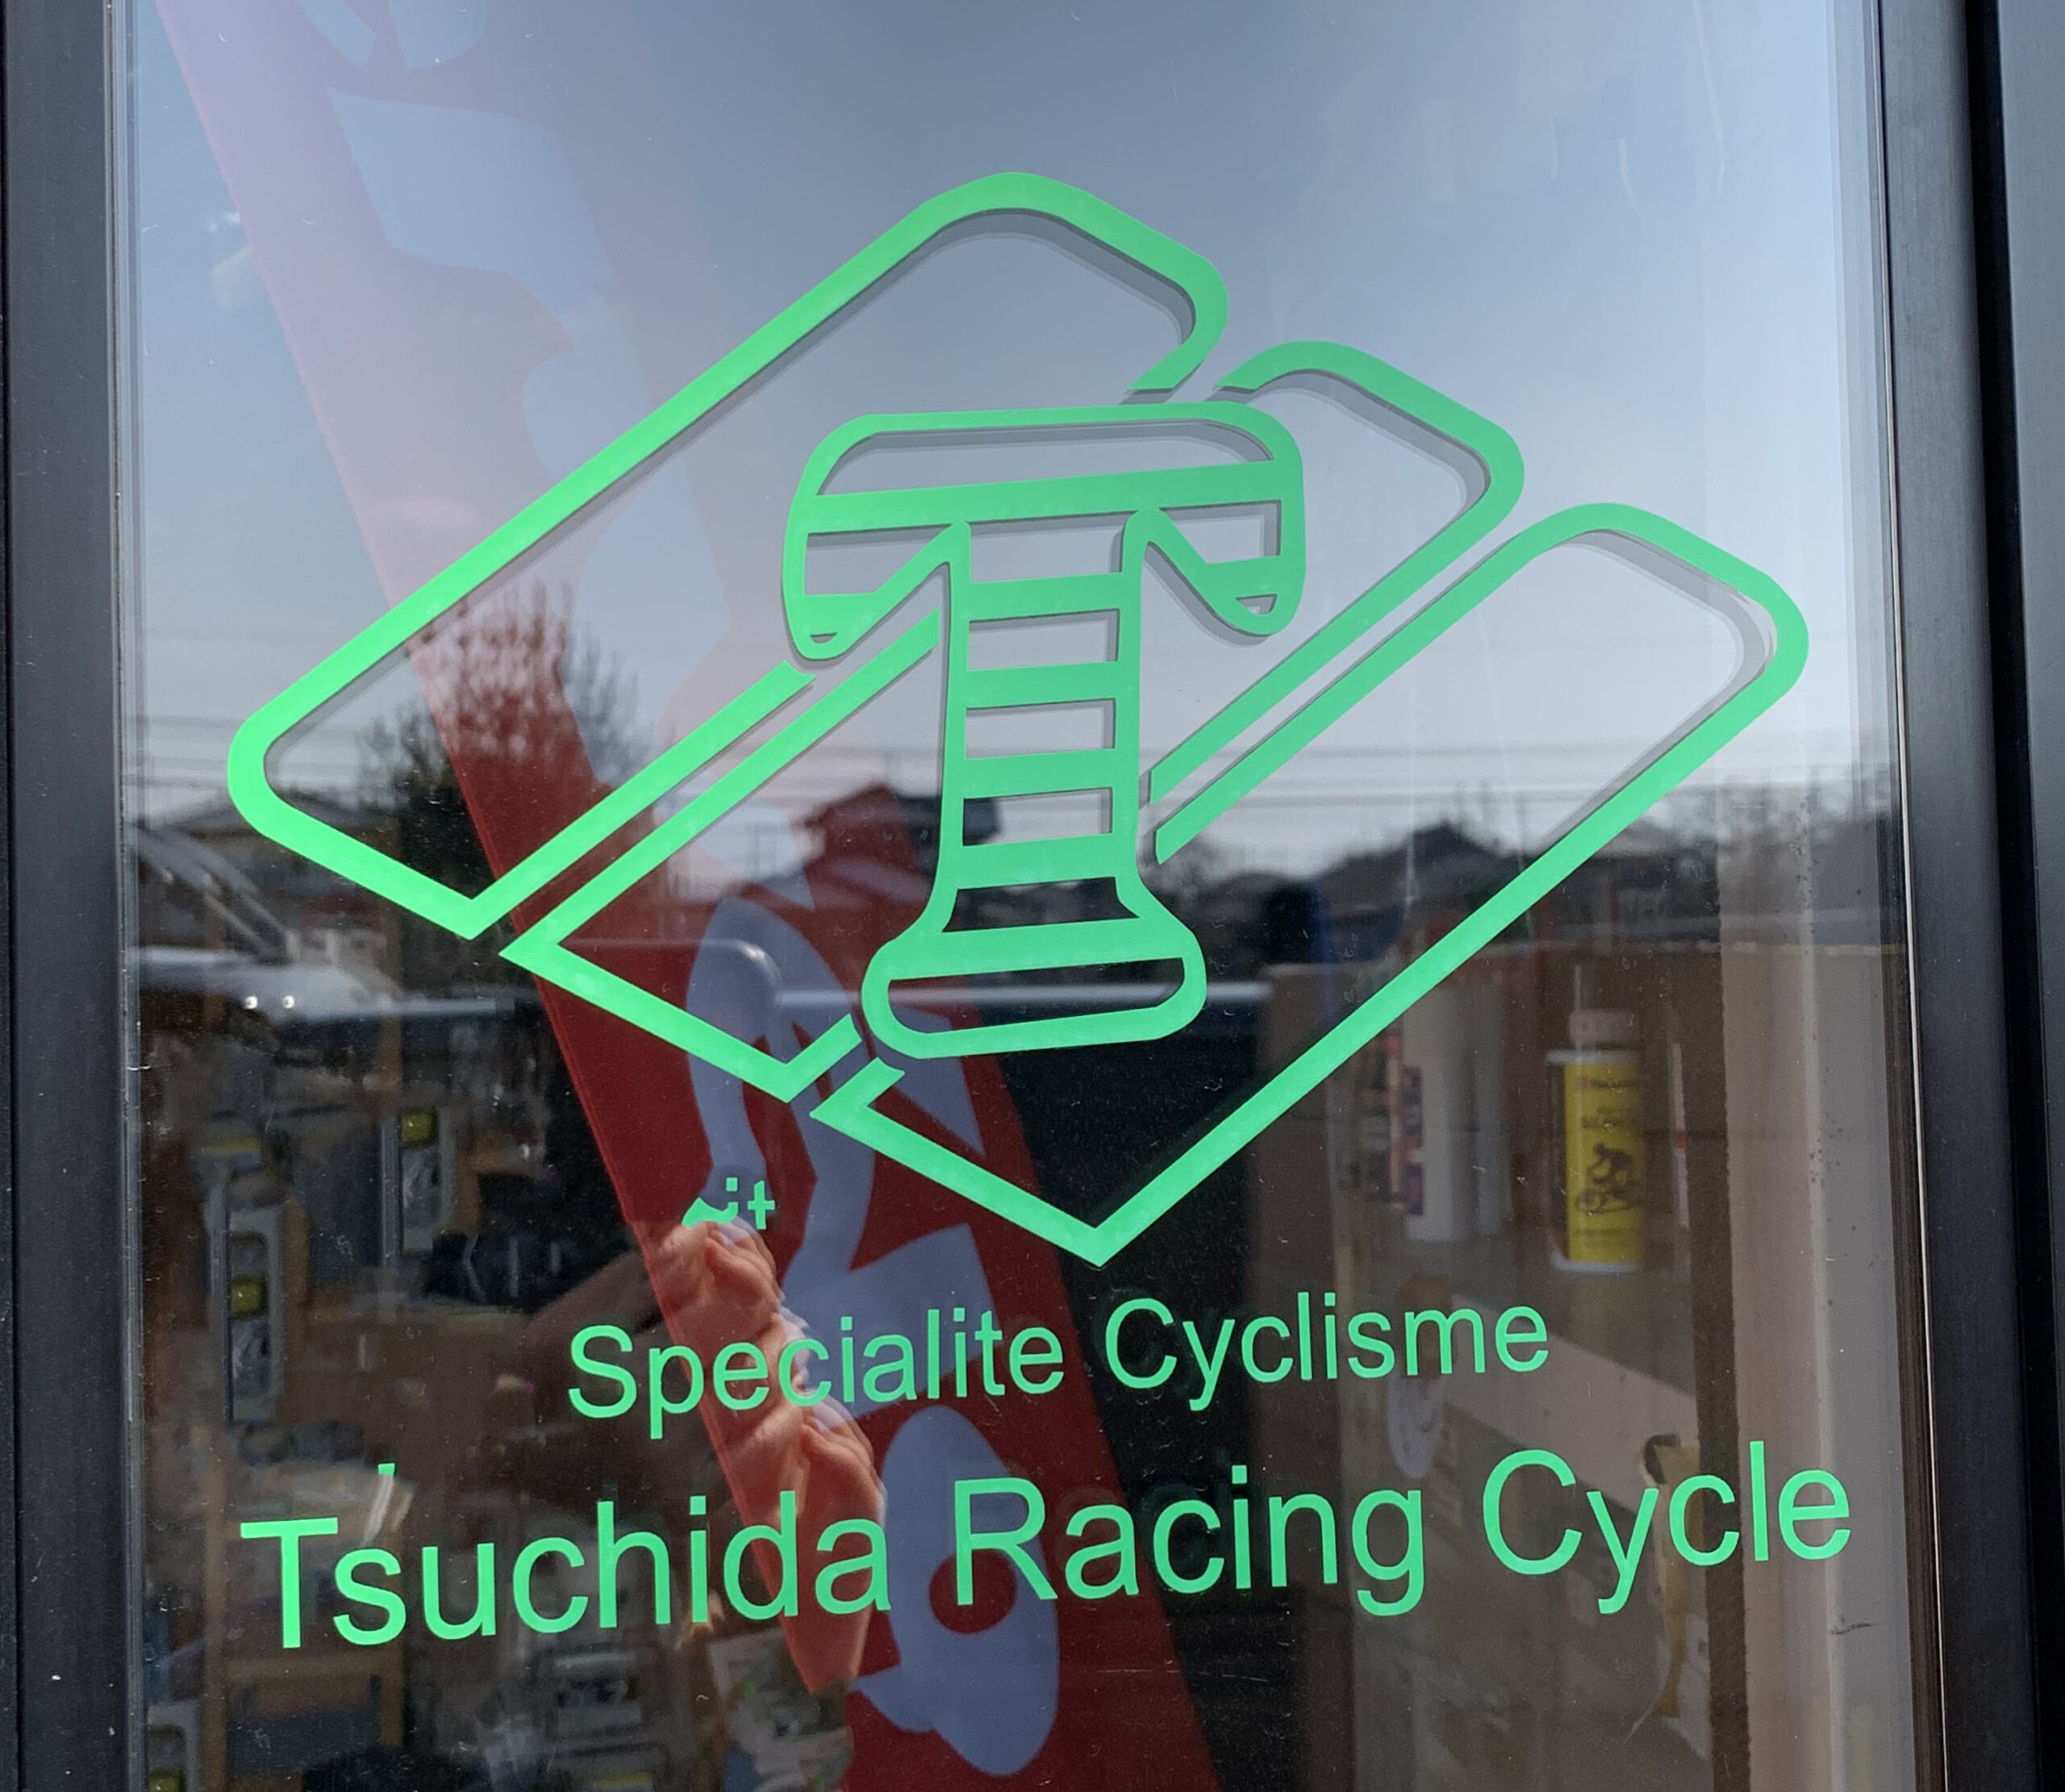 ツチダレーシングサイクル の玄関のロゴ